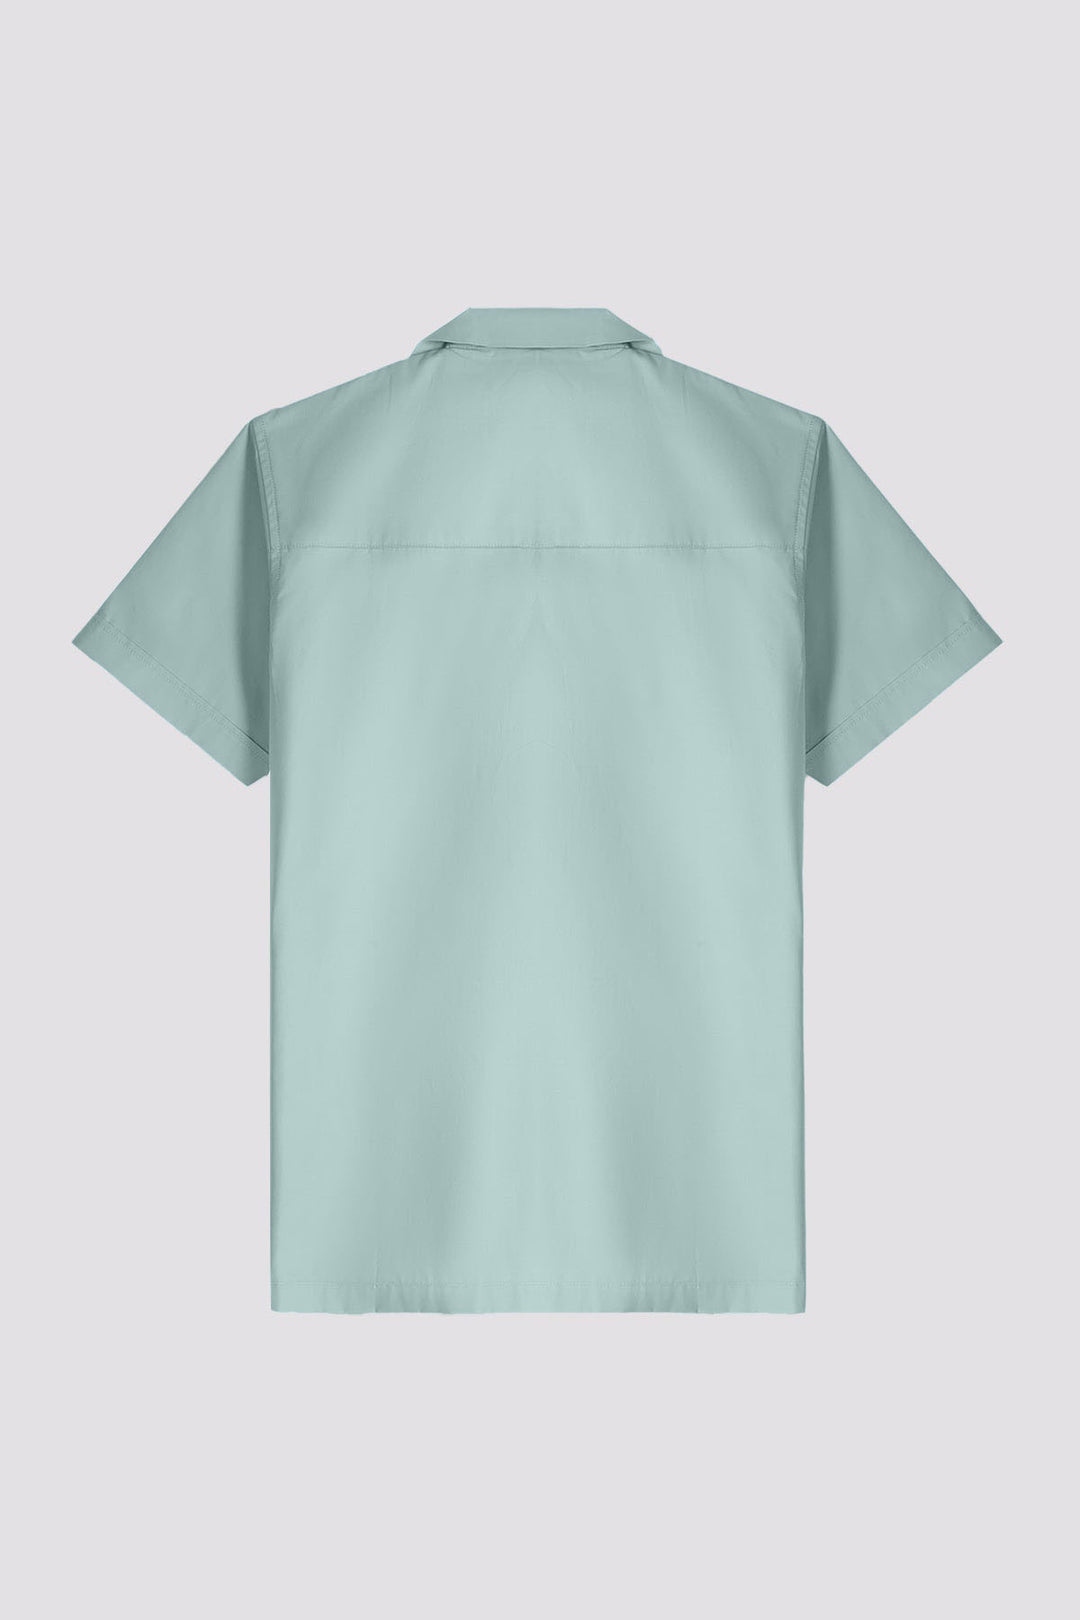 Dawn Blue Casual Resort Shirt - A24 - MS0056R